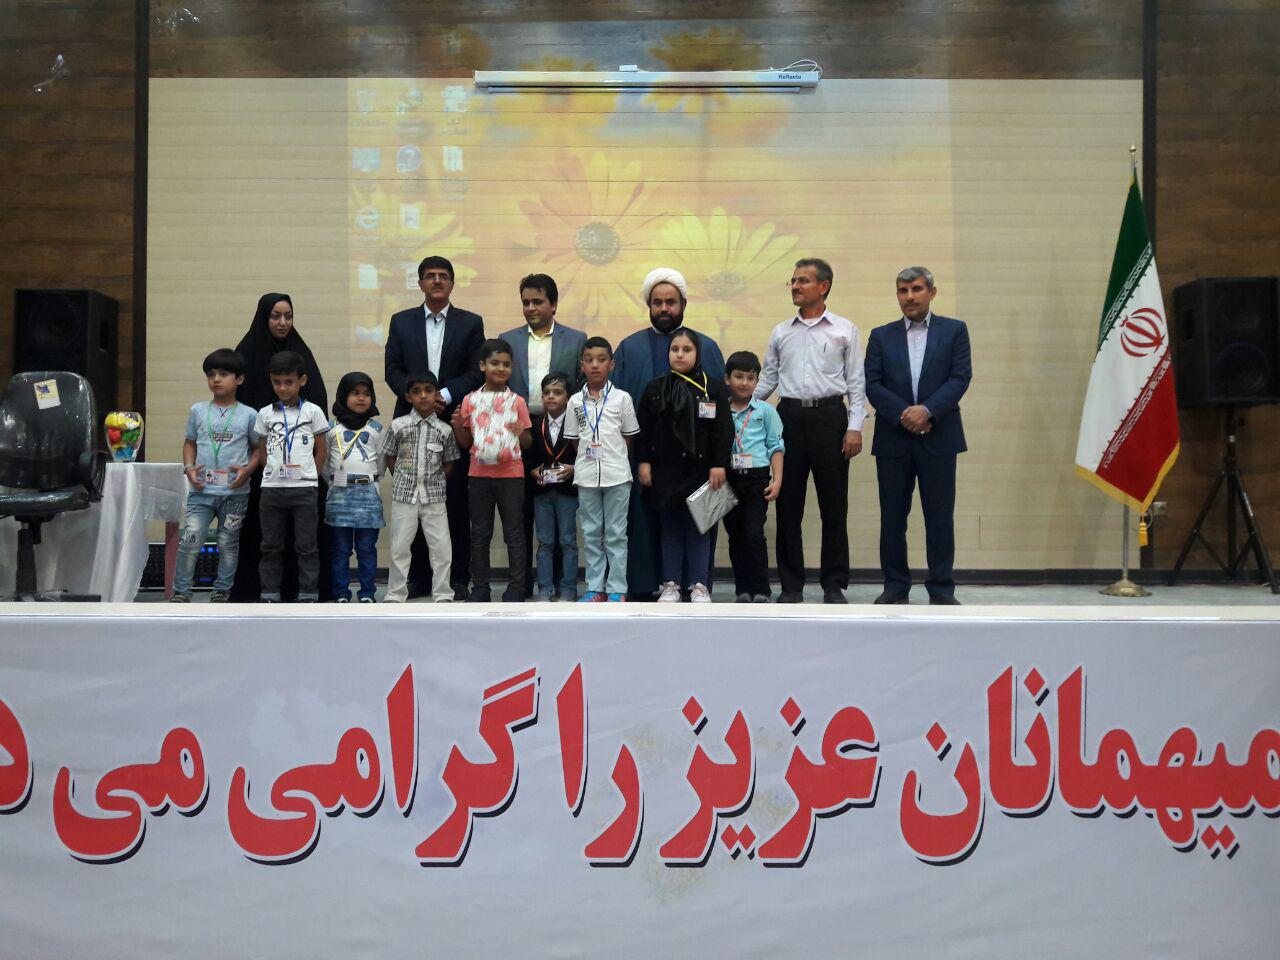 مراسم افتتاحیه آموزشگاه آزاد علمی نگین خلیج فارس در کانون پرورش فکری کودکان و نوجوانان سیراف